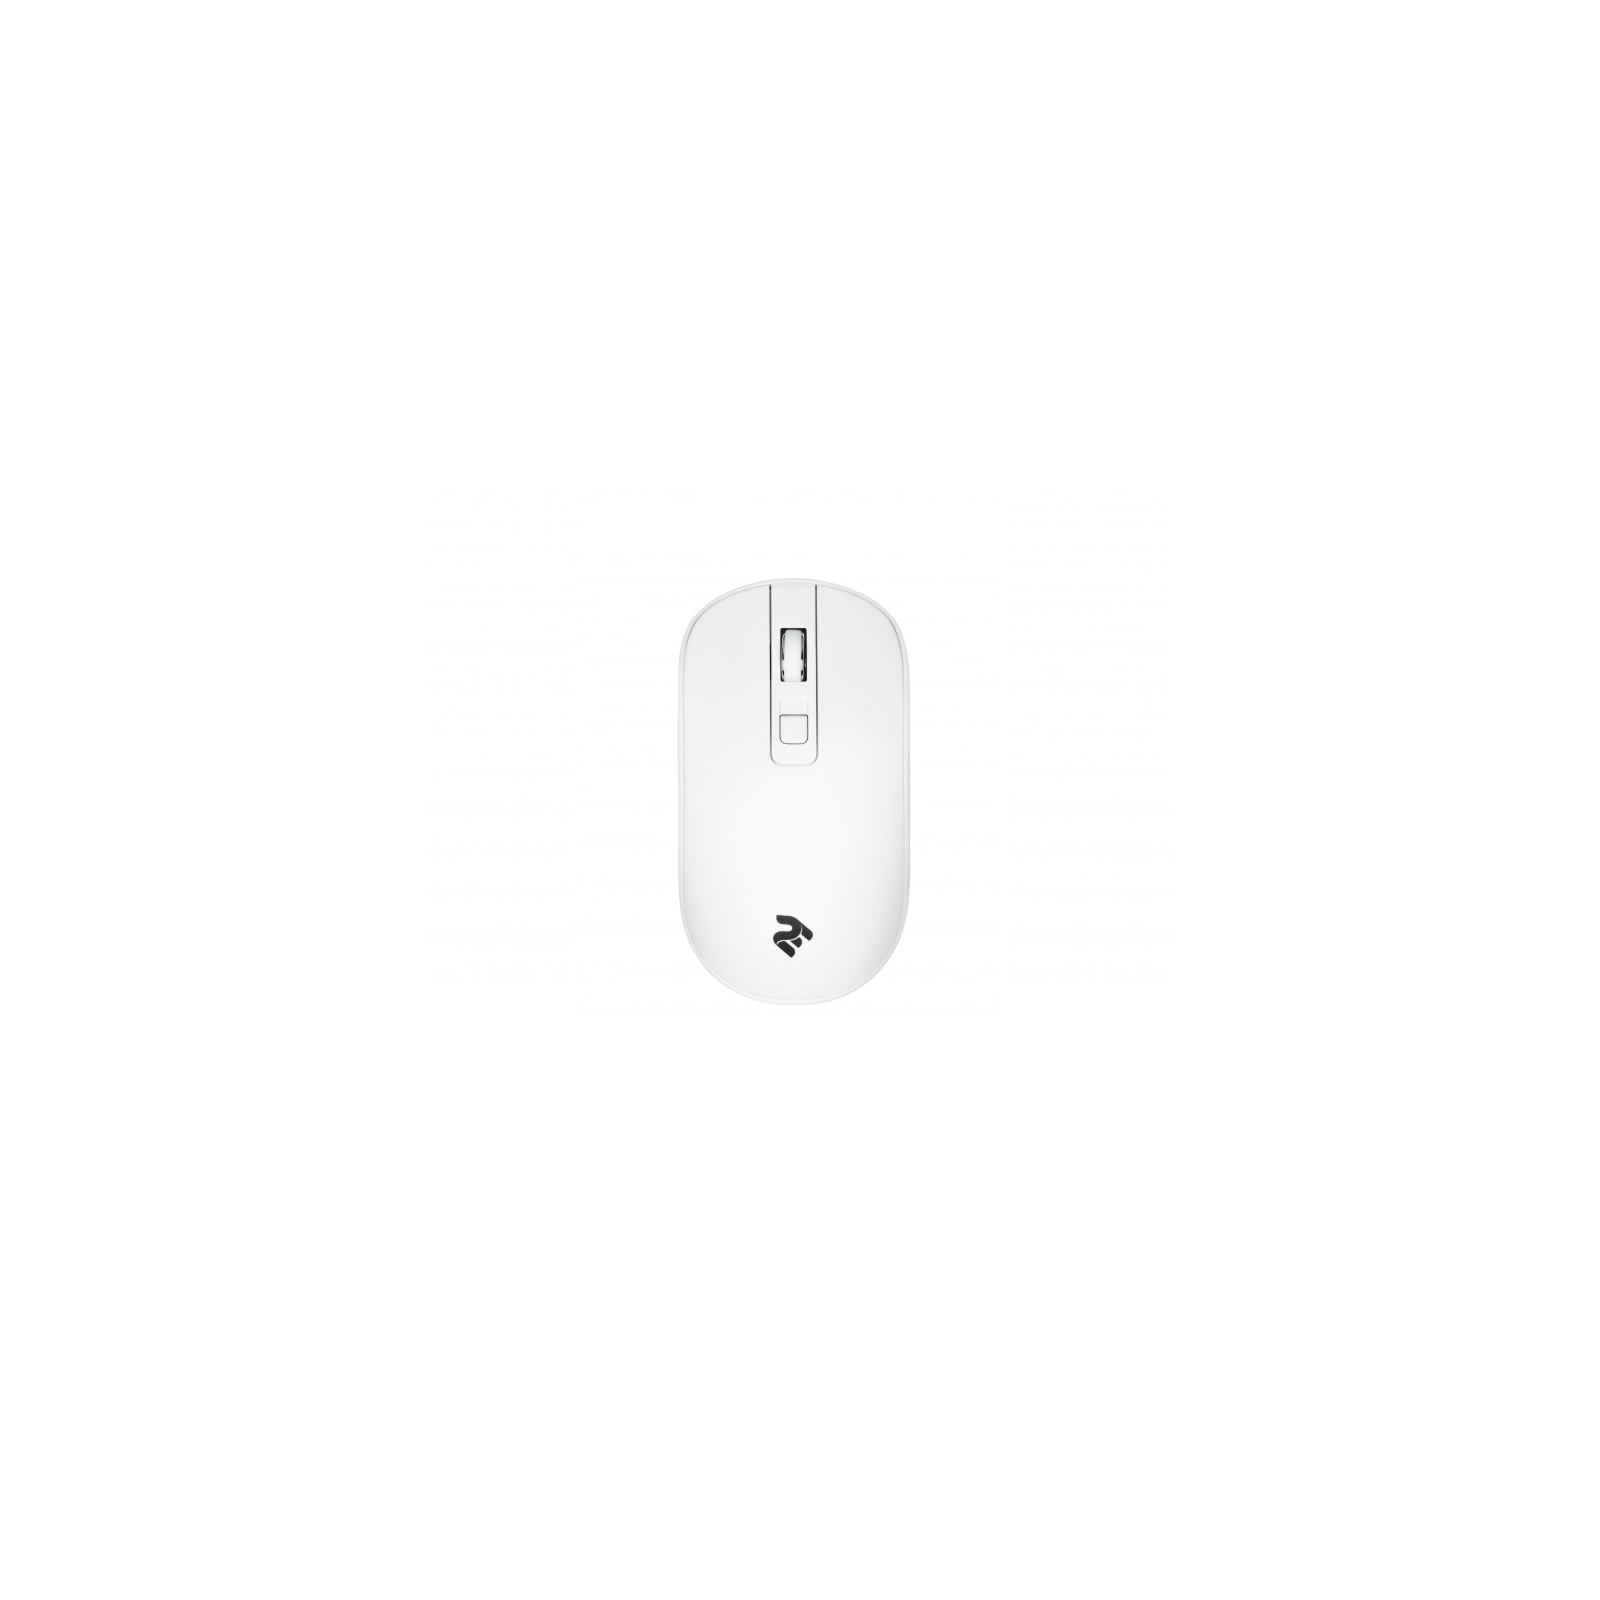 Мышка 2E MF210 Wireless White (2E-MF210WW)